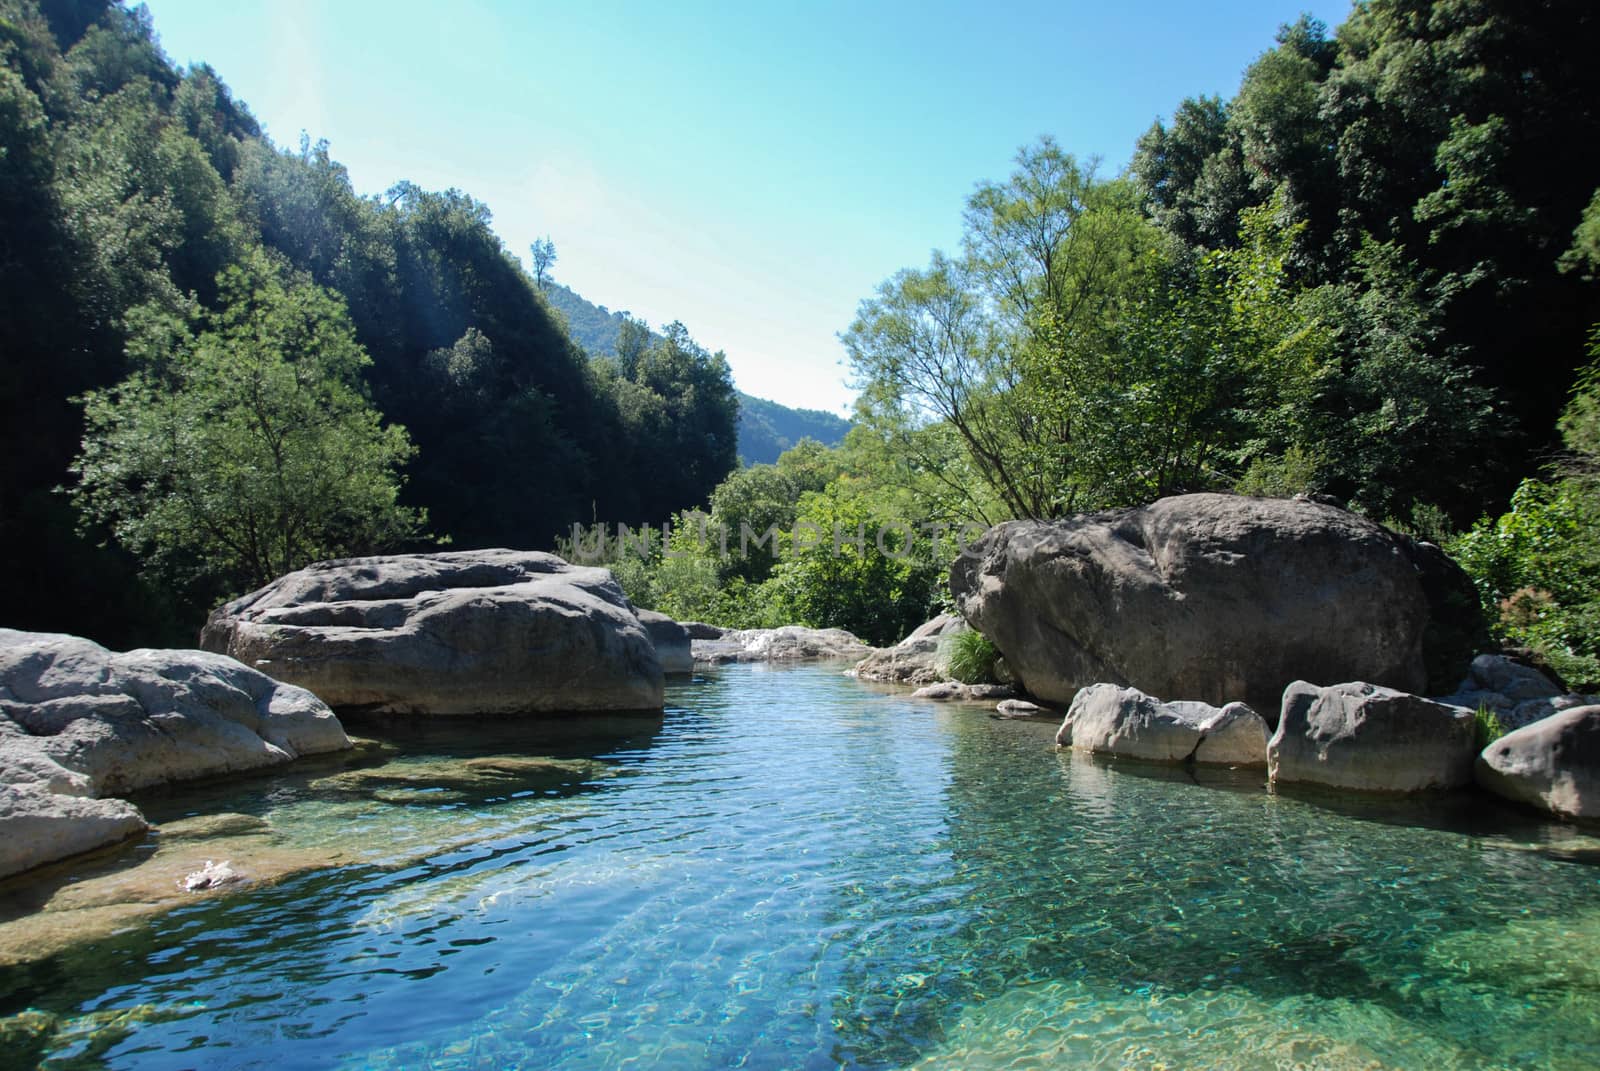 Creek Rio Barbaria - Liguria -Italy by cosca